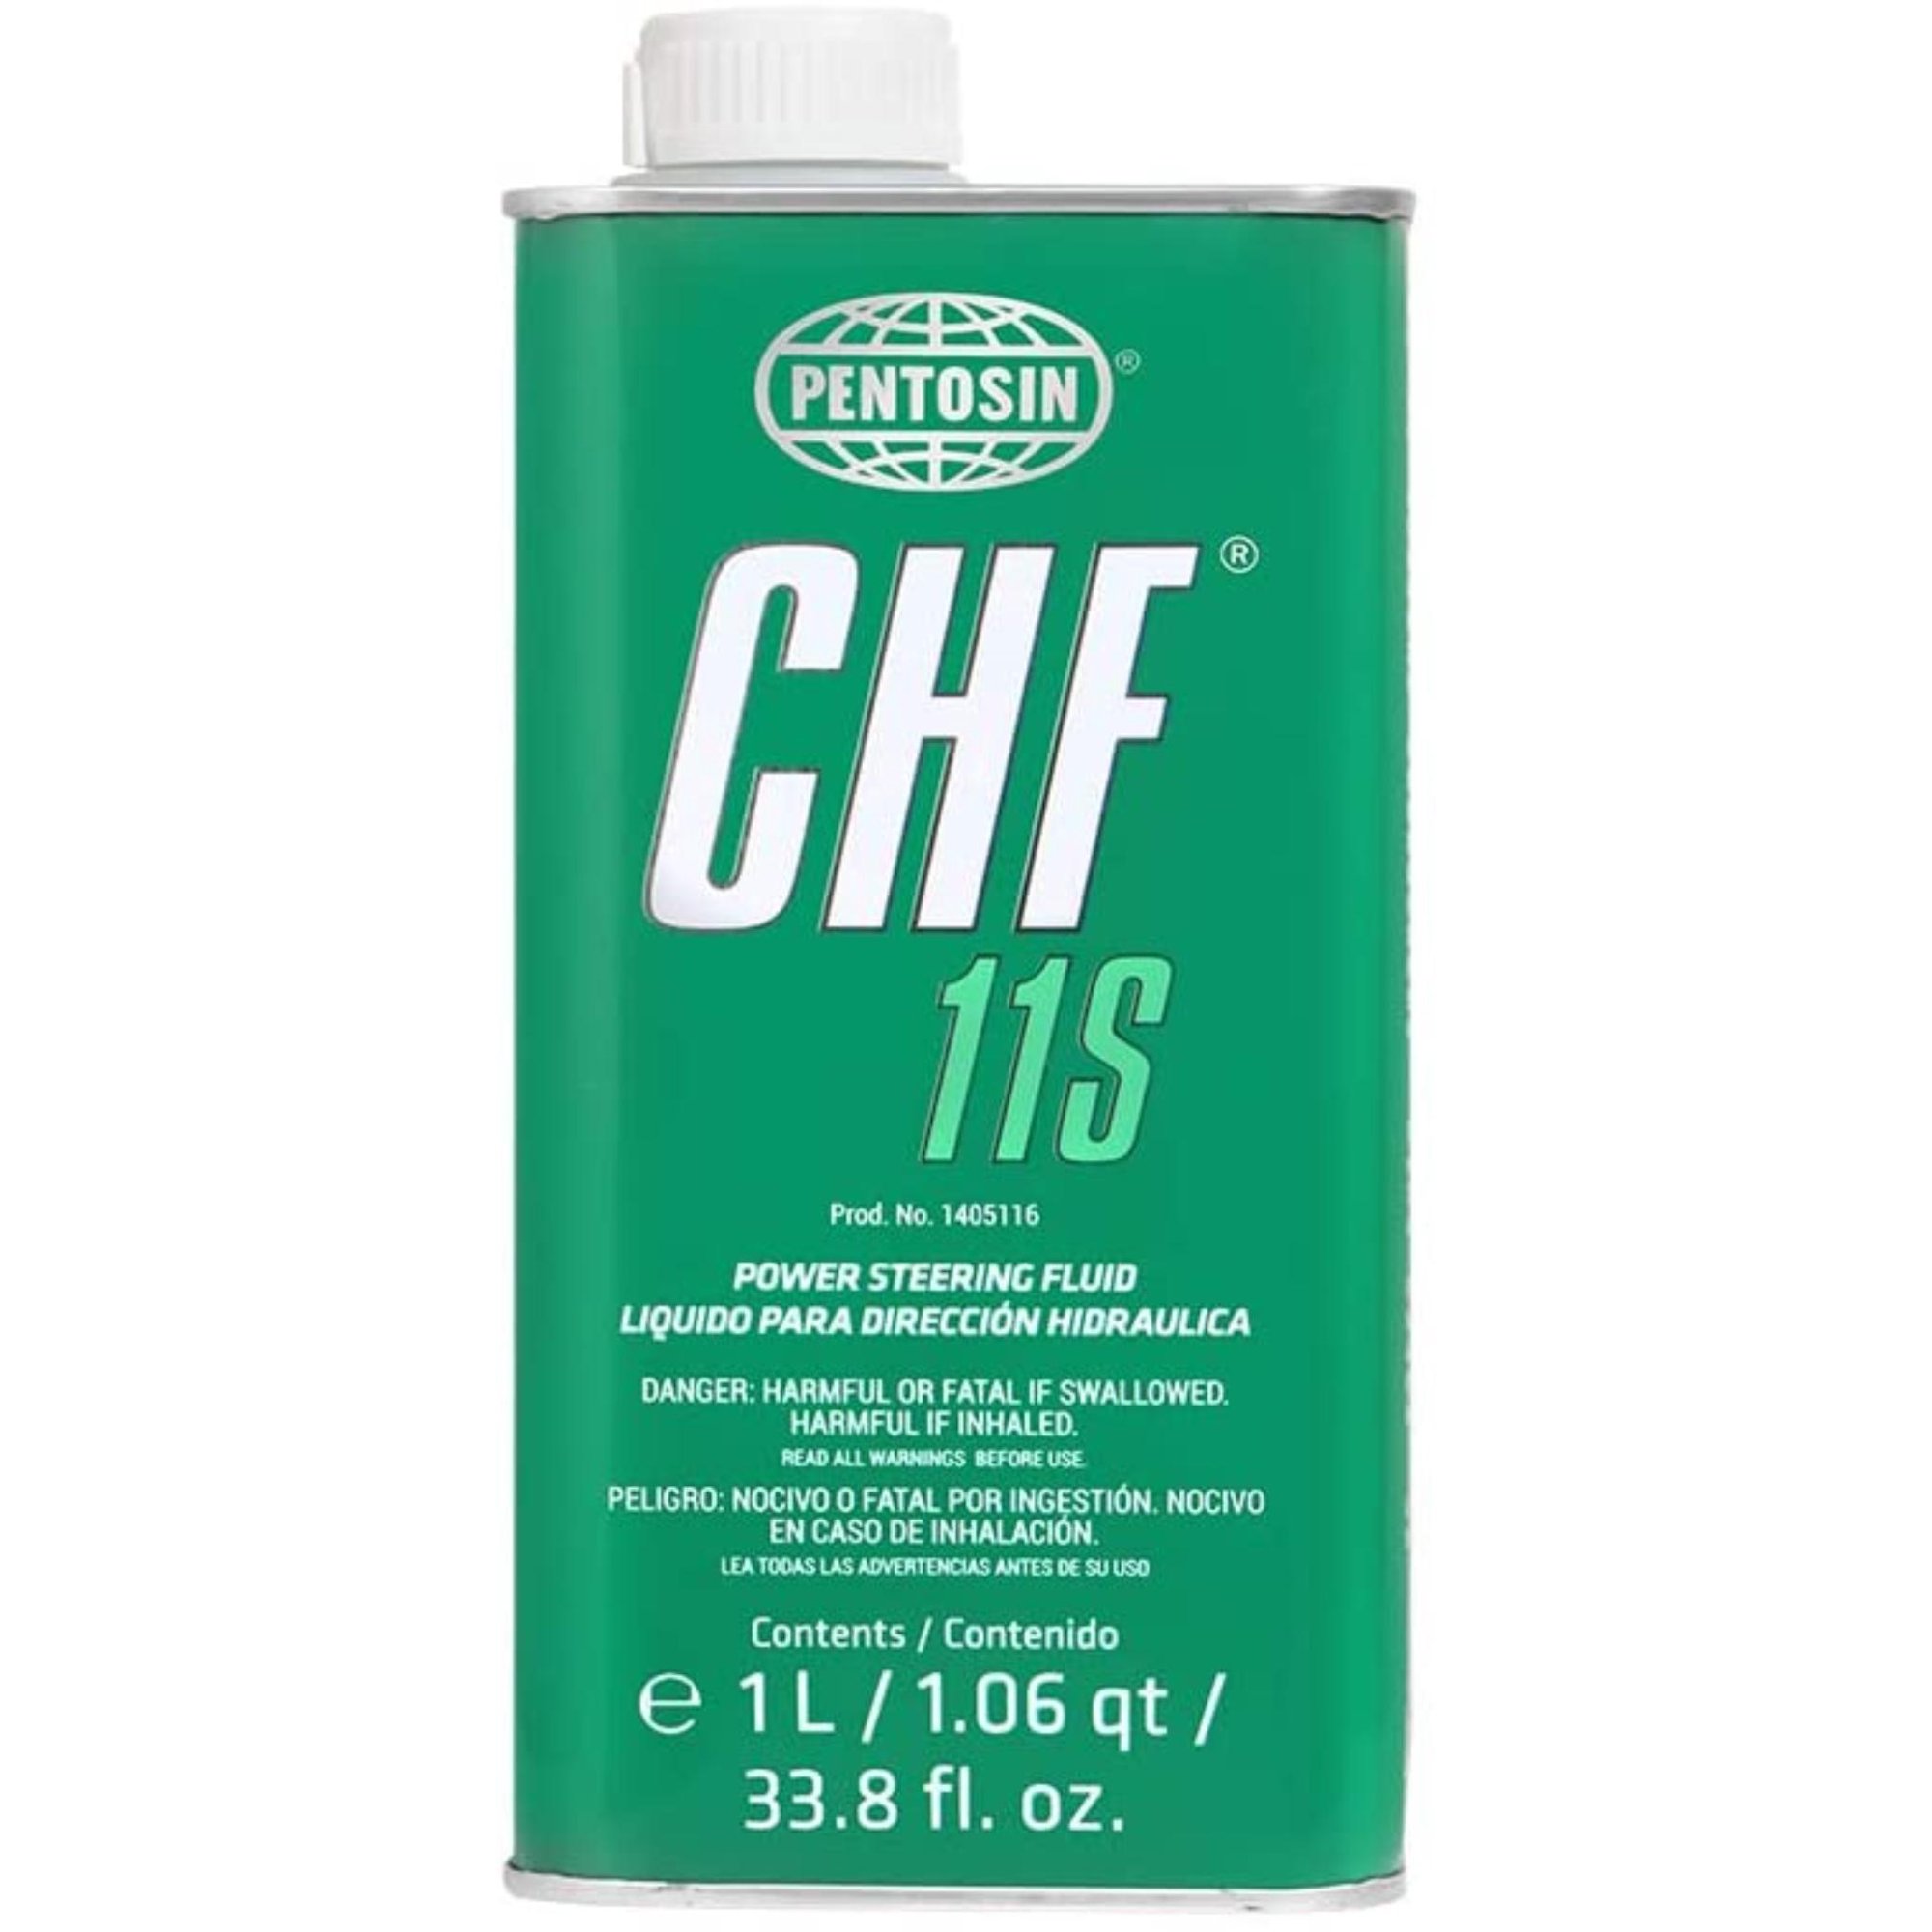 Pentosin CHF 11s Synthetic Hydraulic Fluid